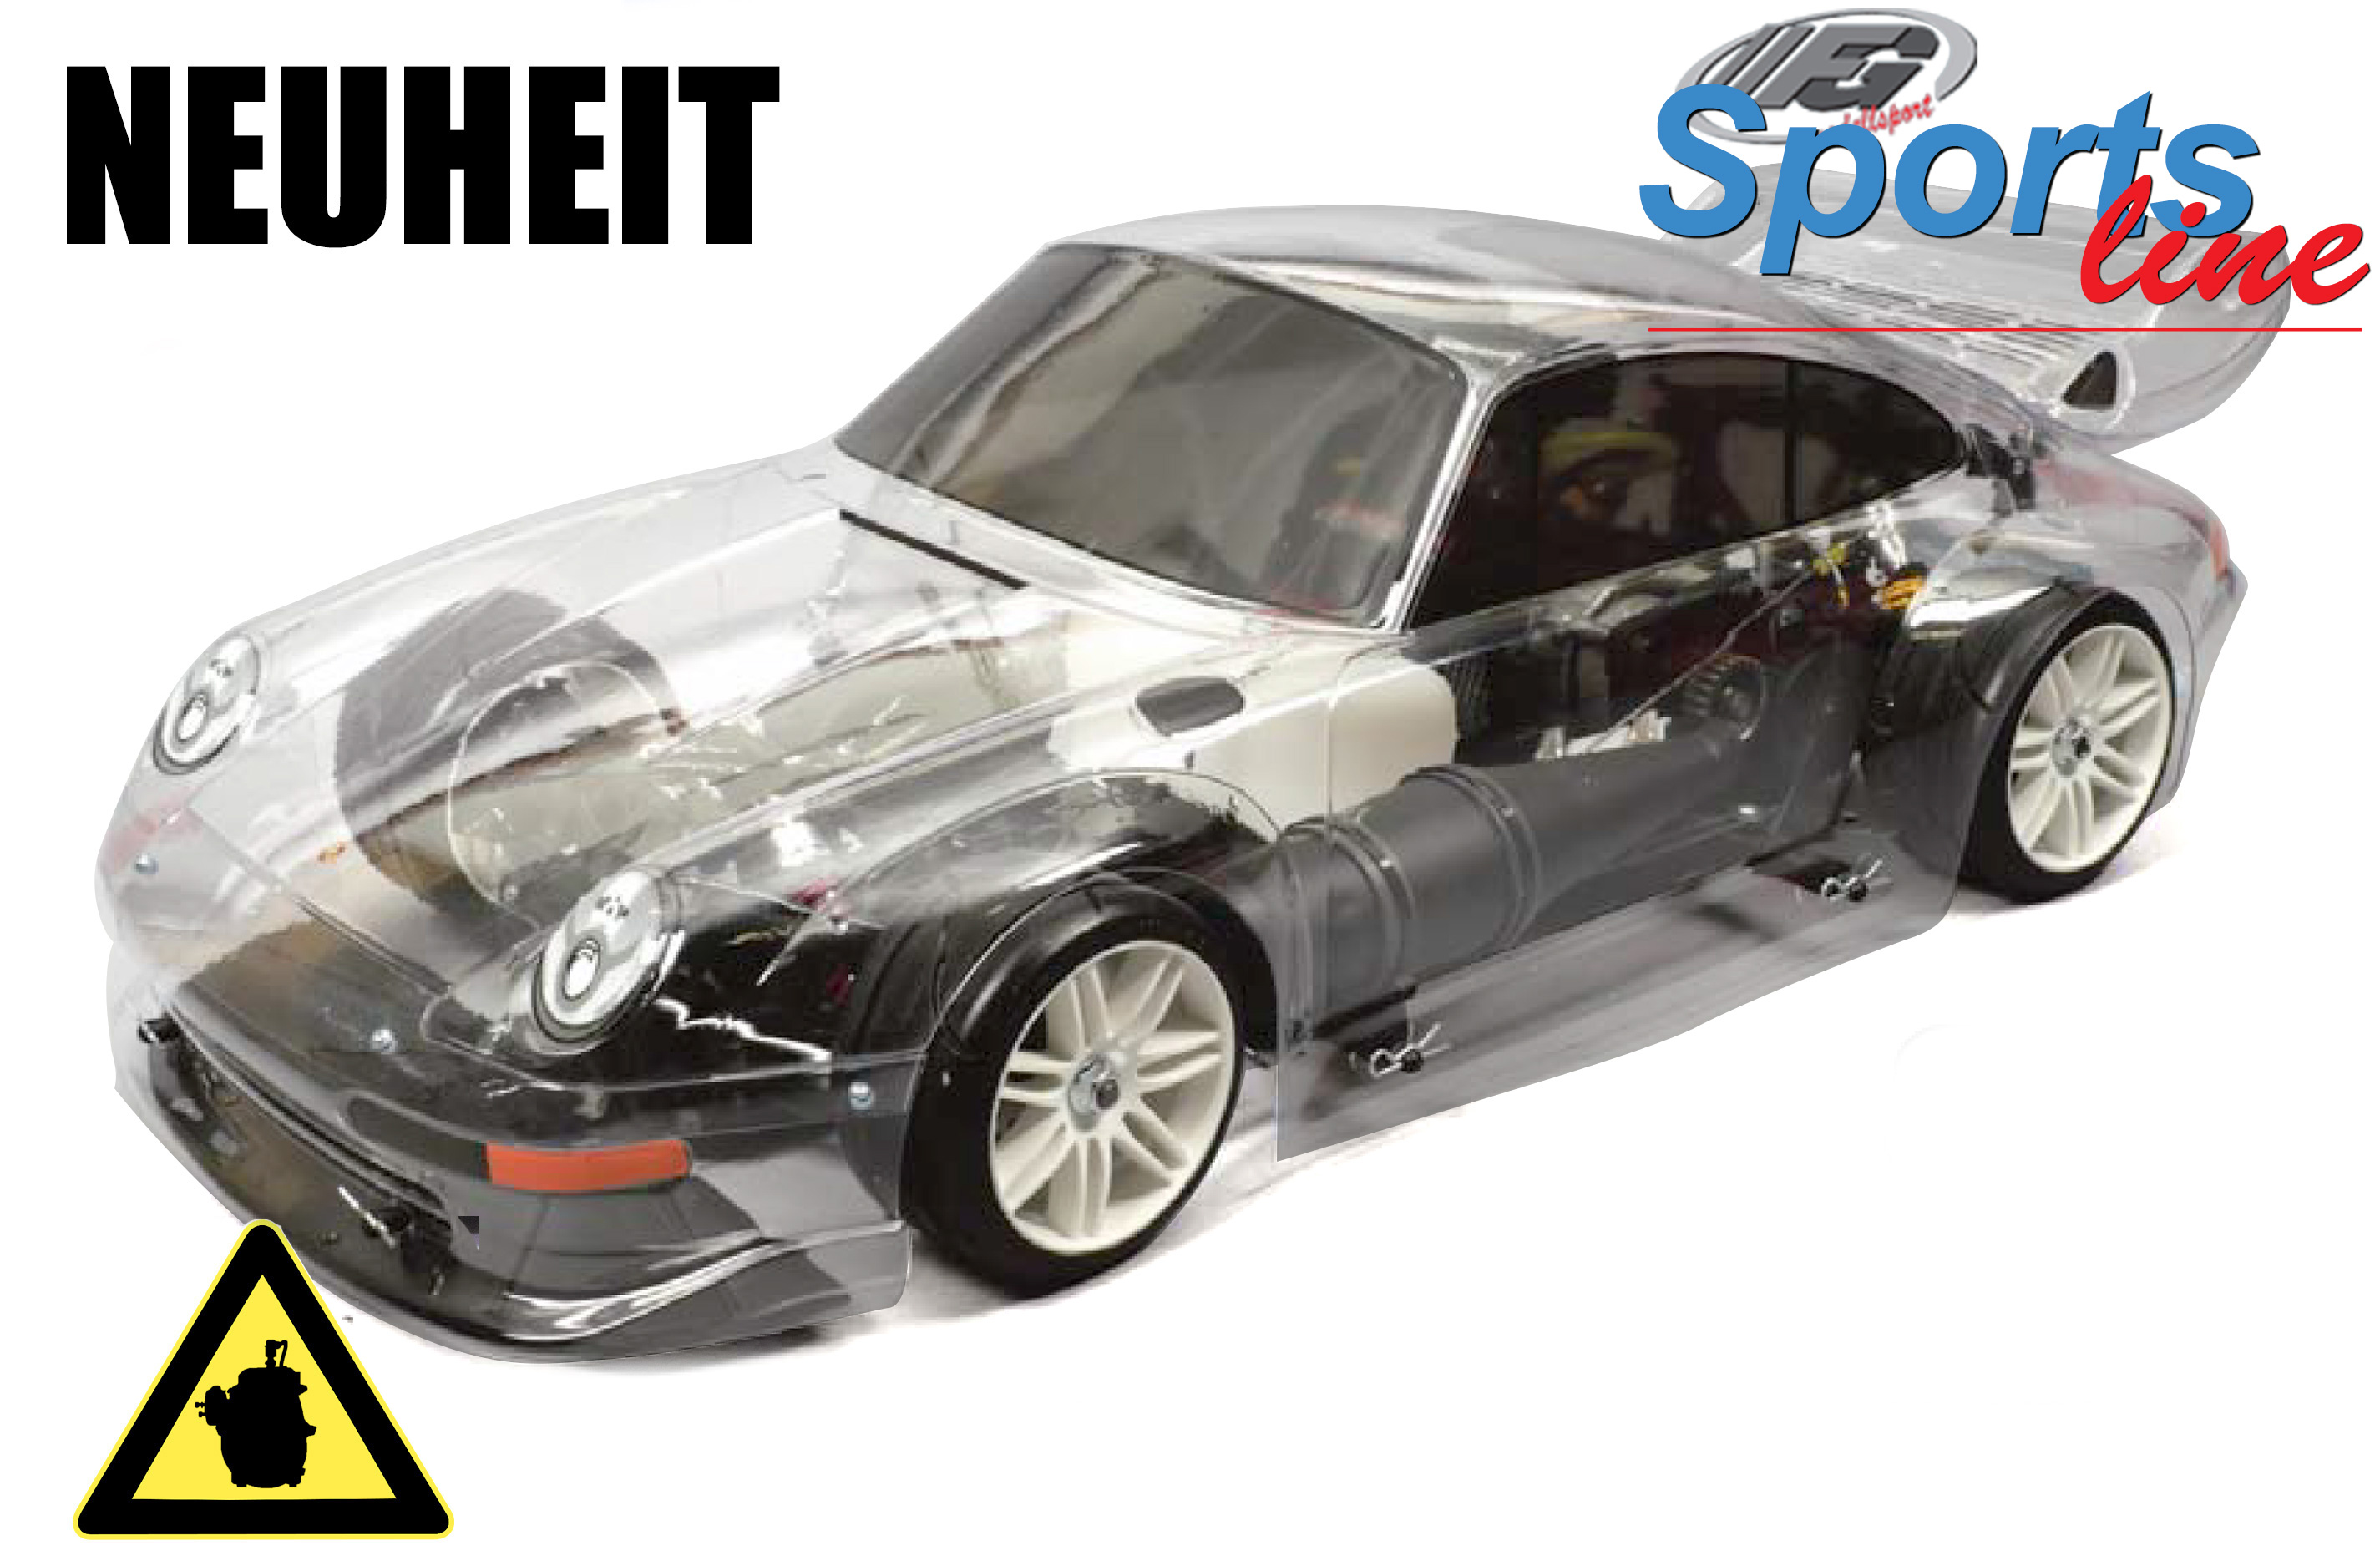 FG Sportsline mit Porsche GT2 Karosserie 465 mm Radstand, 23cm³ Motor